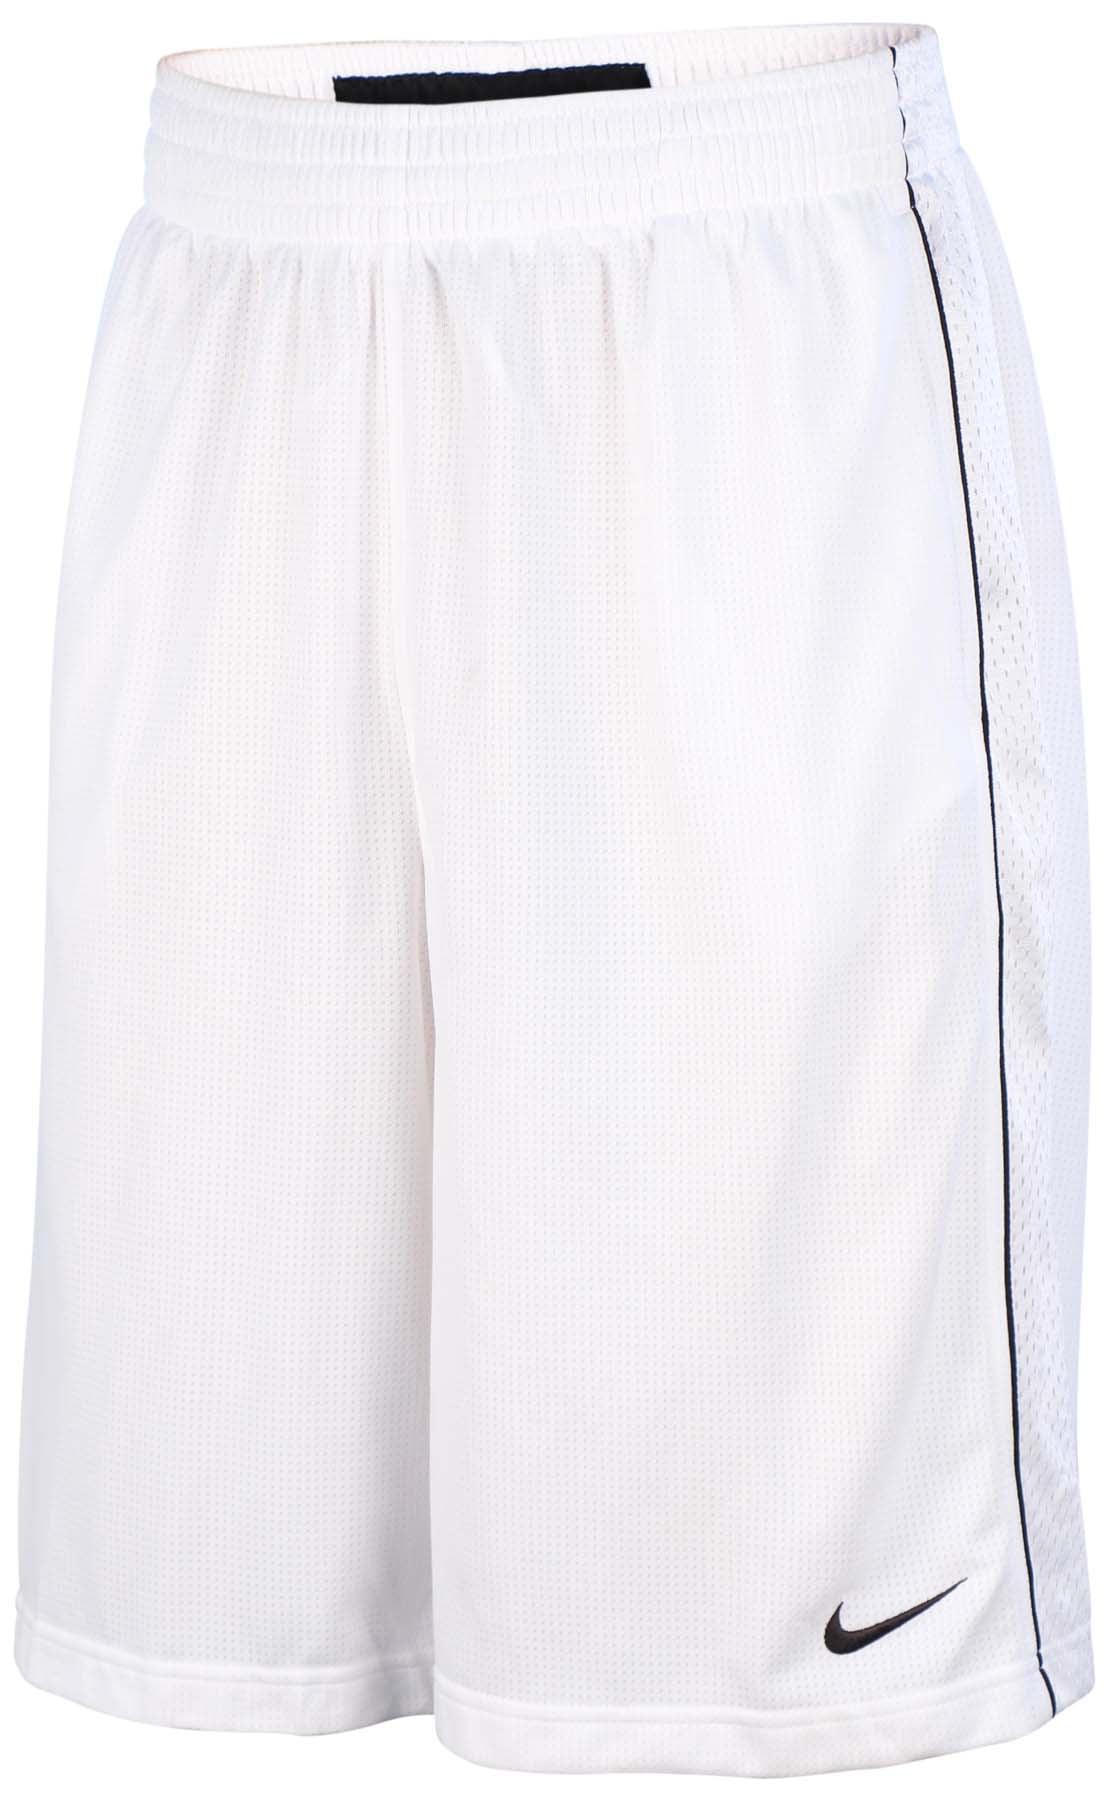 Nike Men's Dri-Fit Franchise Mesh Basketball Shorts - Walmart.com